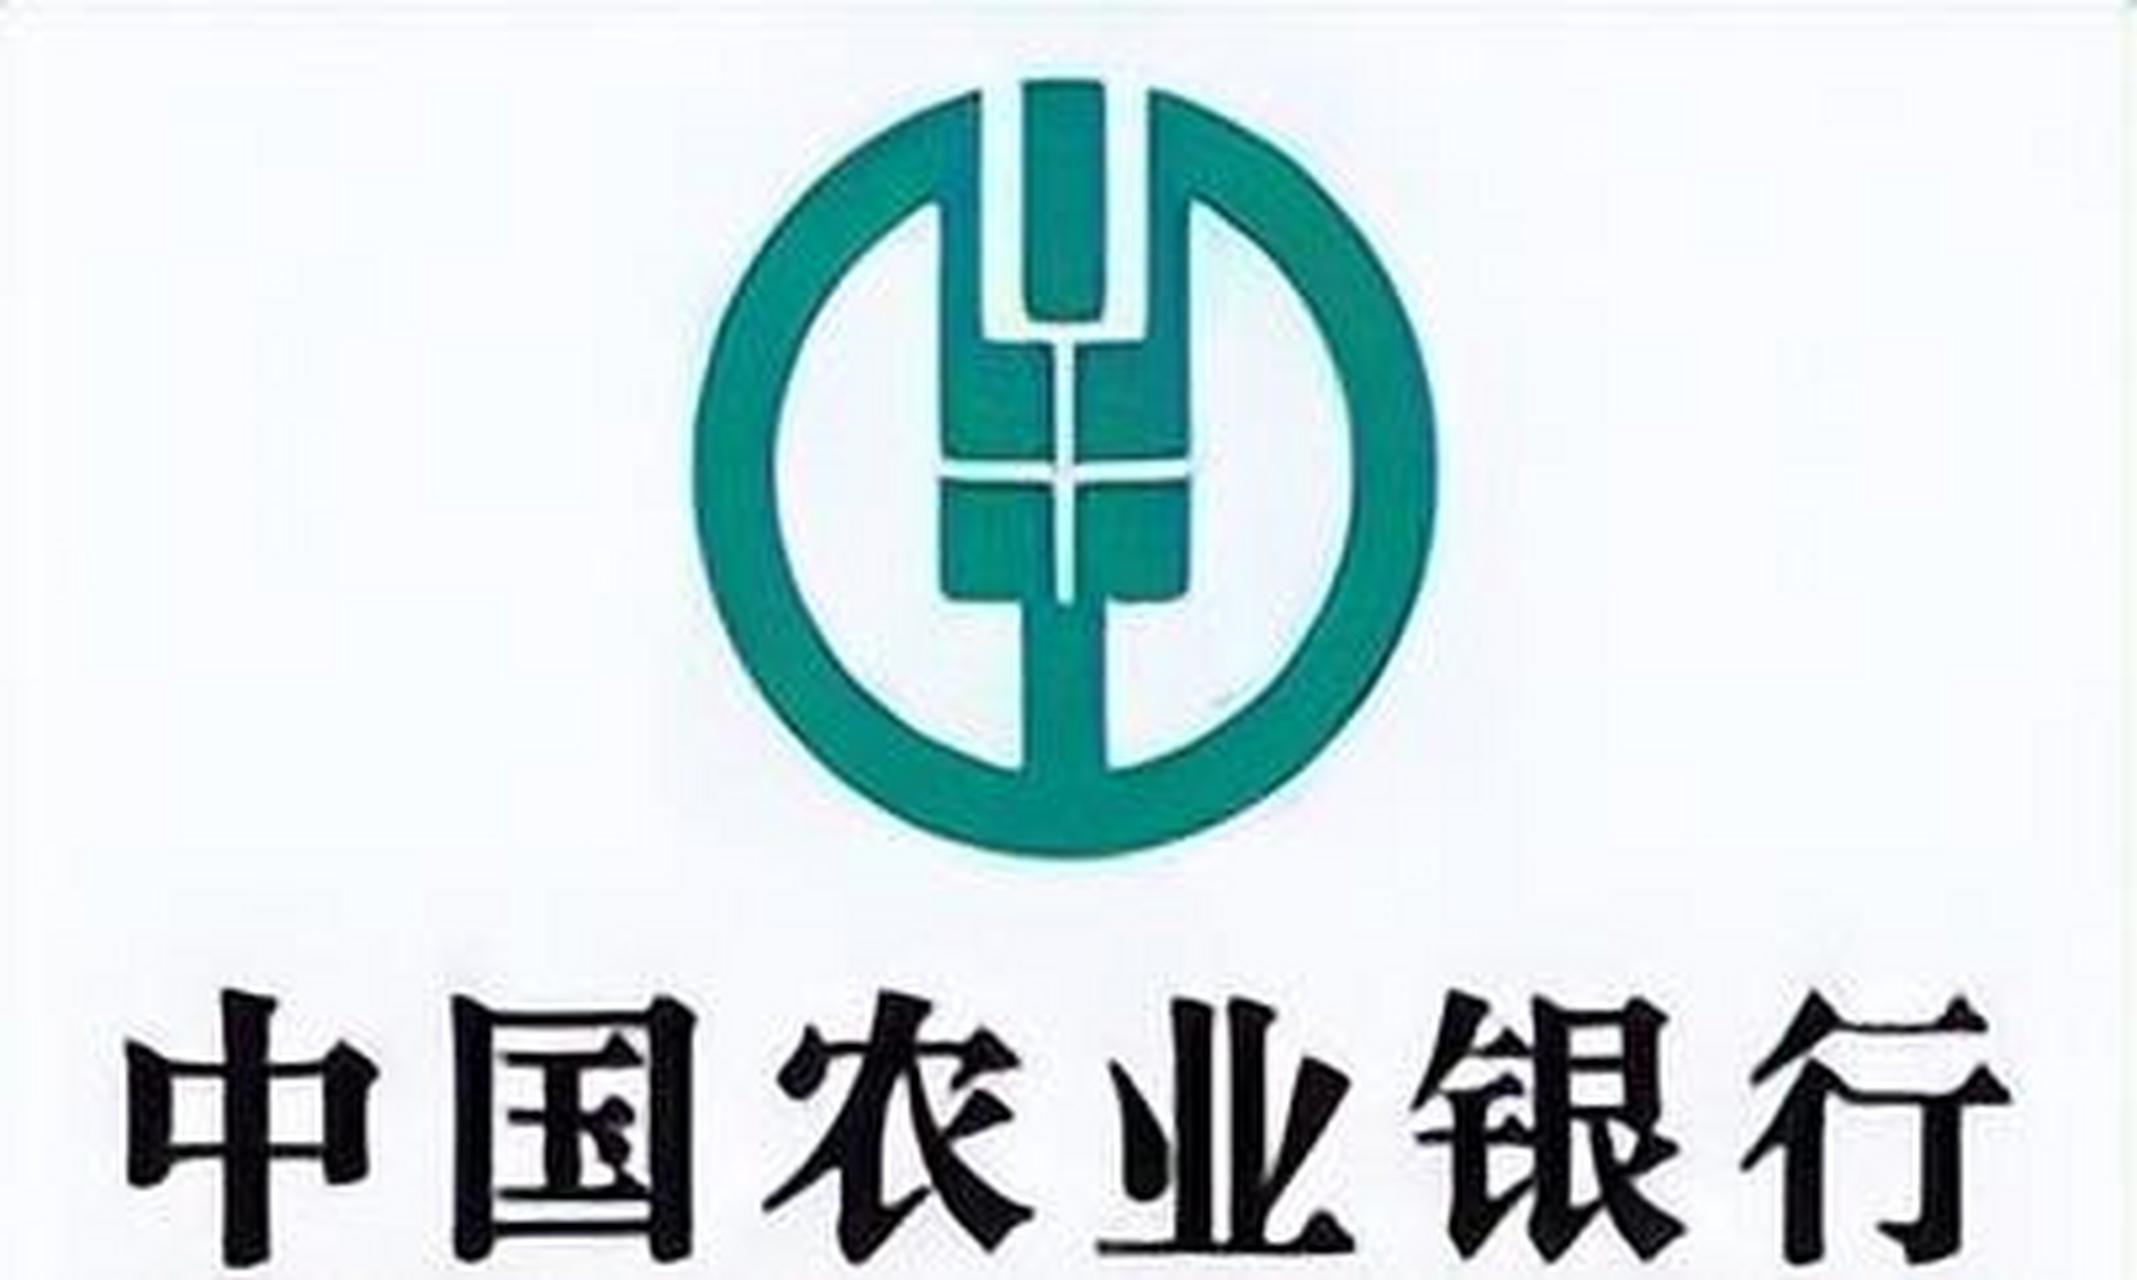 农业银行logo图片大全图片